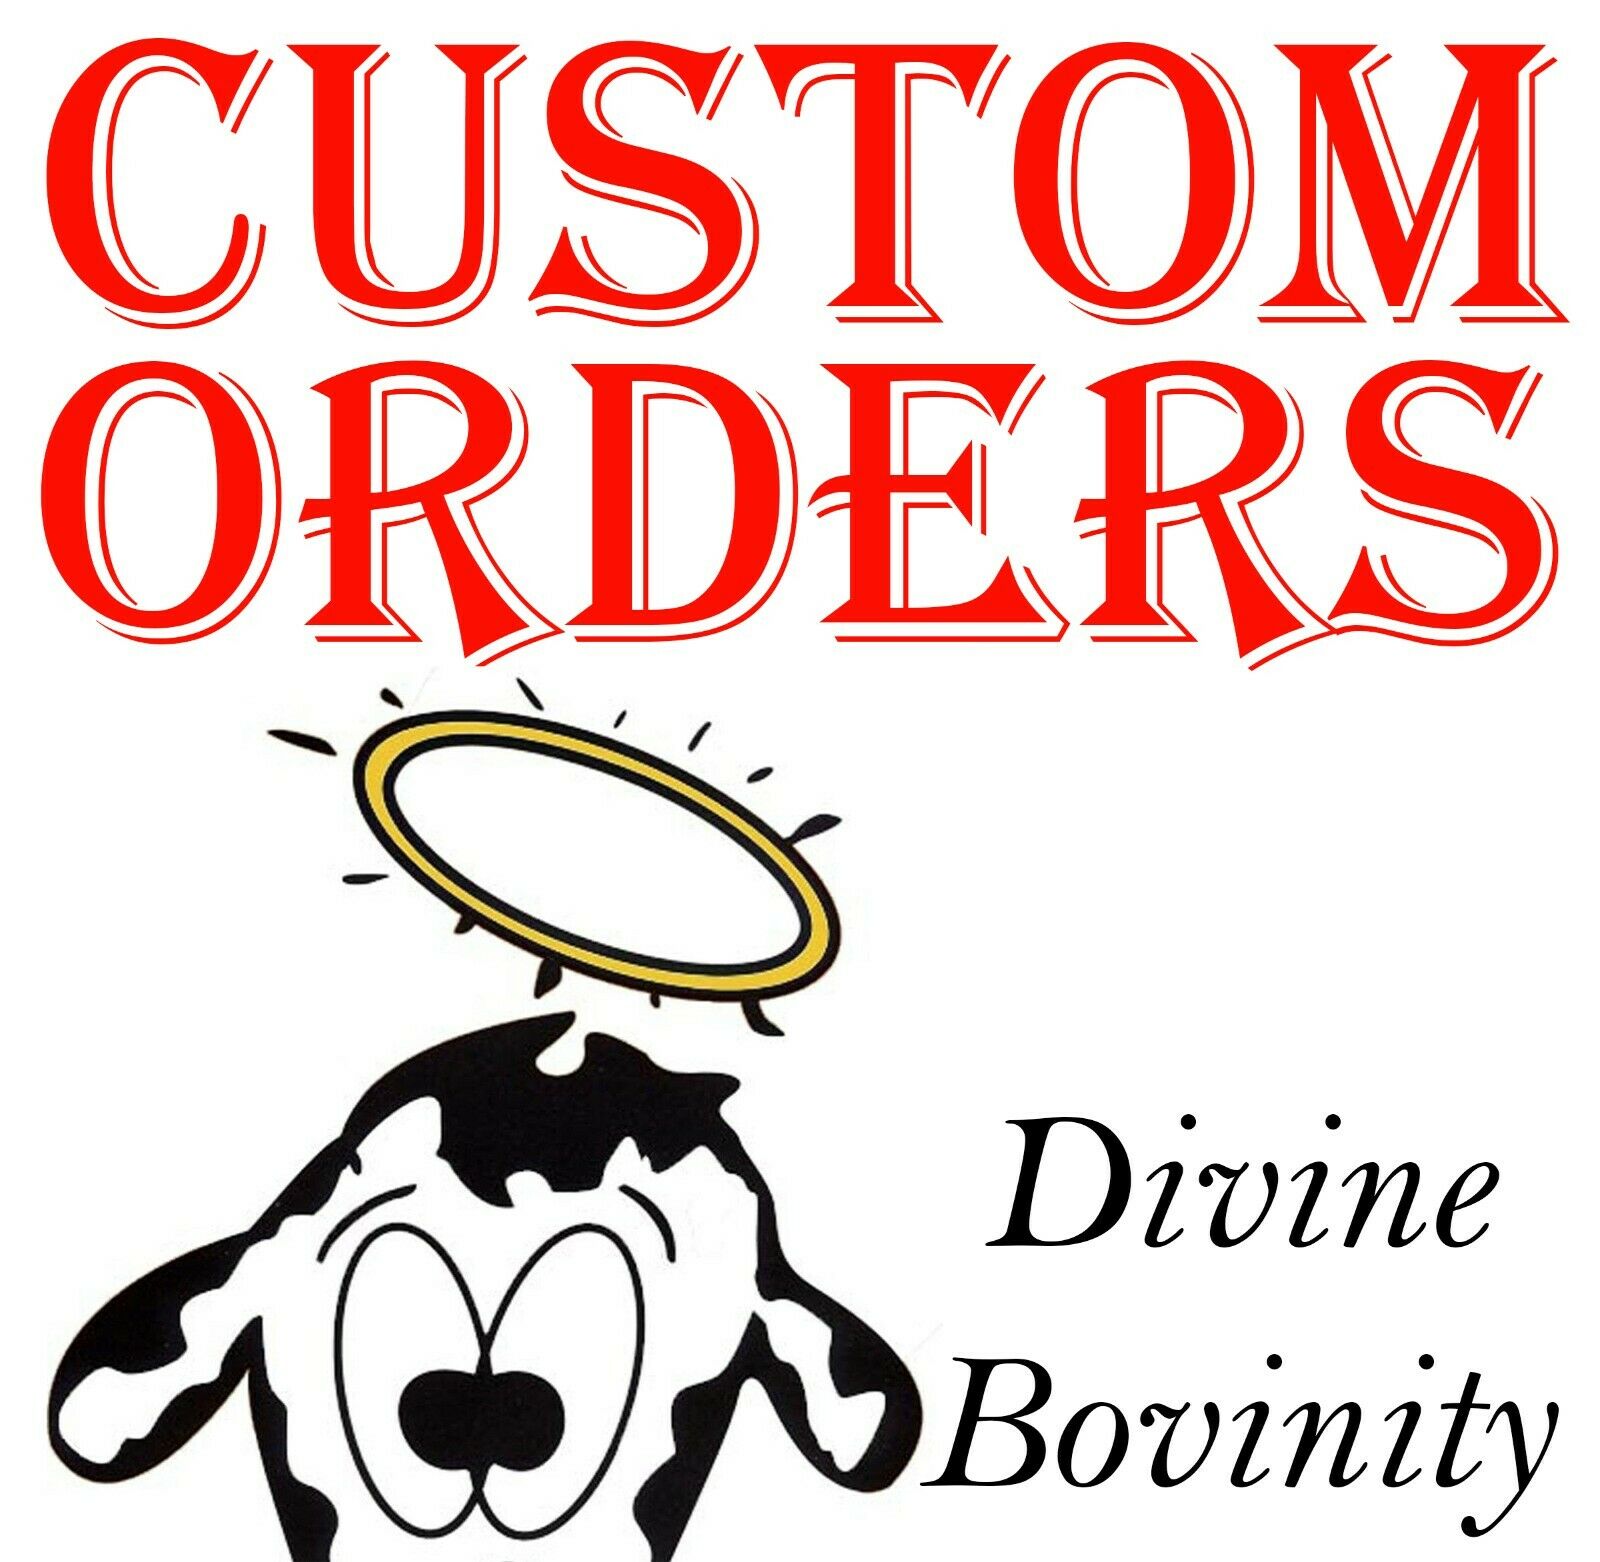 Divine Bovinity Custom Order Iron On Transfer For T-shirt + Light & Dark Fabrics